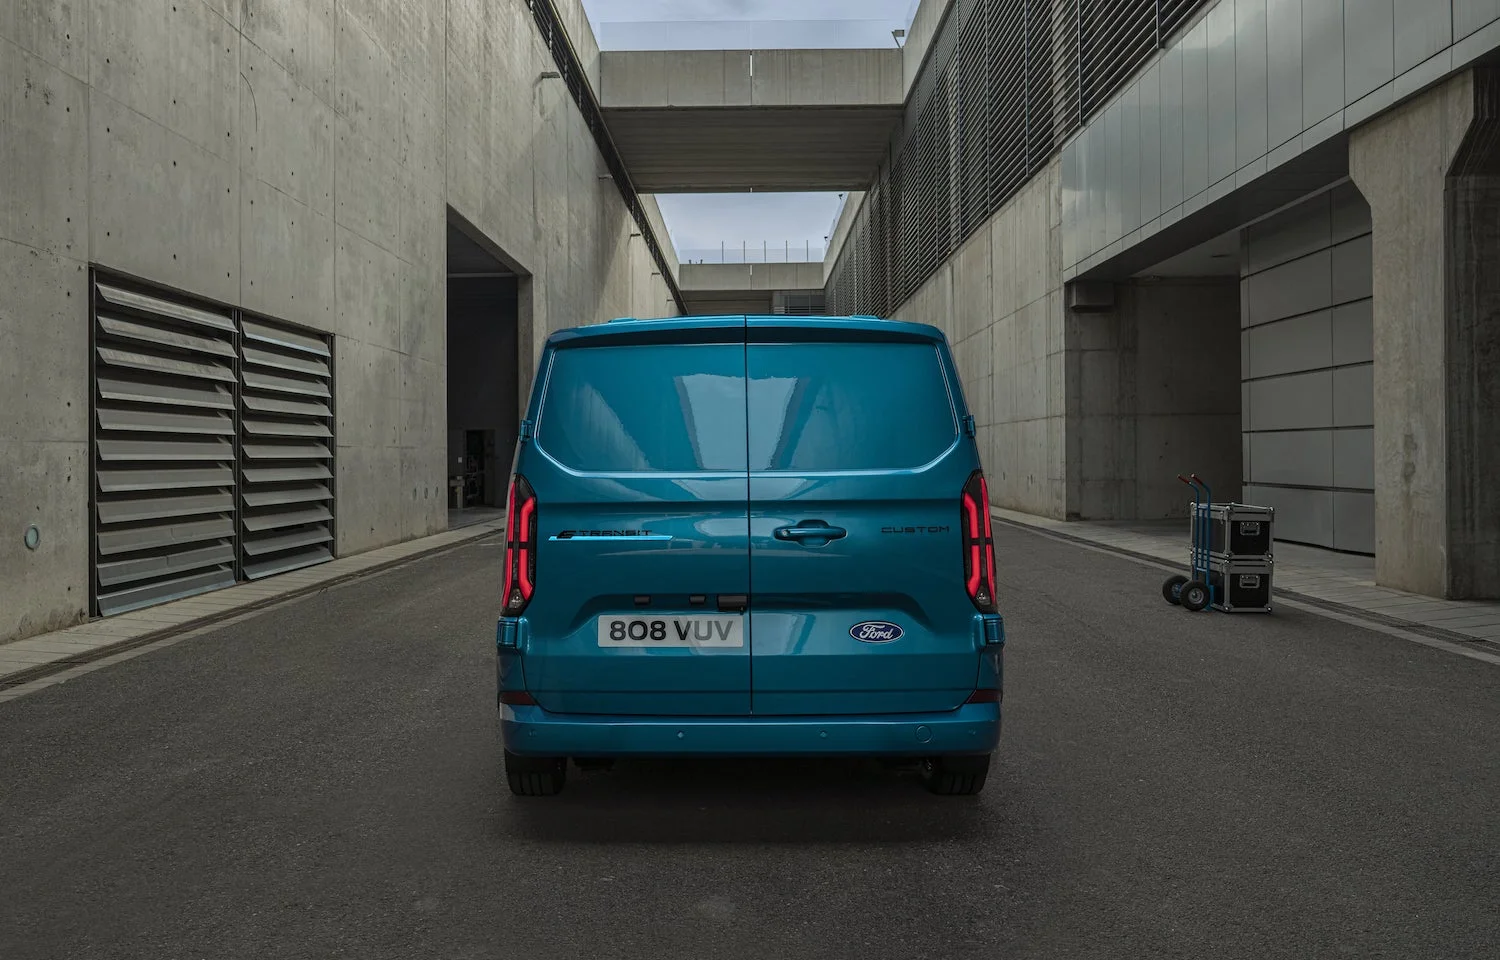 VW teases images of Ford-based Transporter van